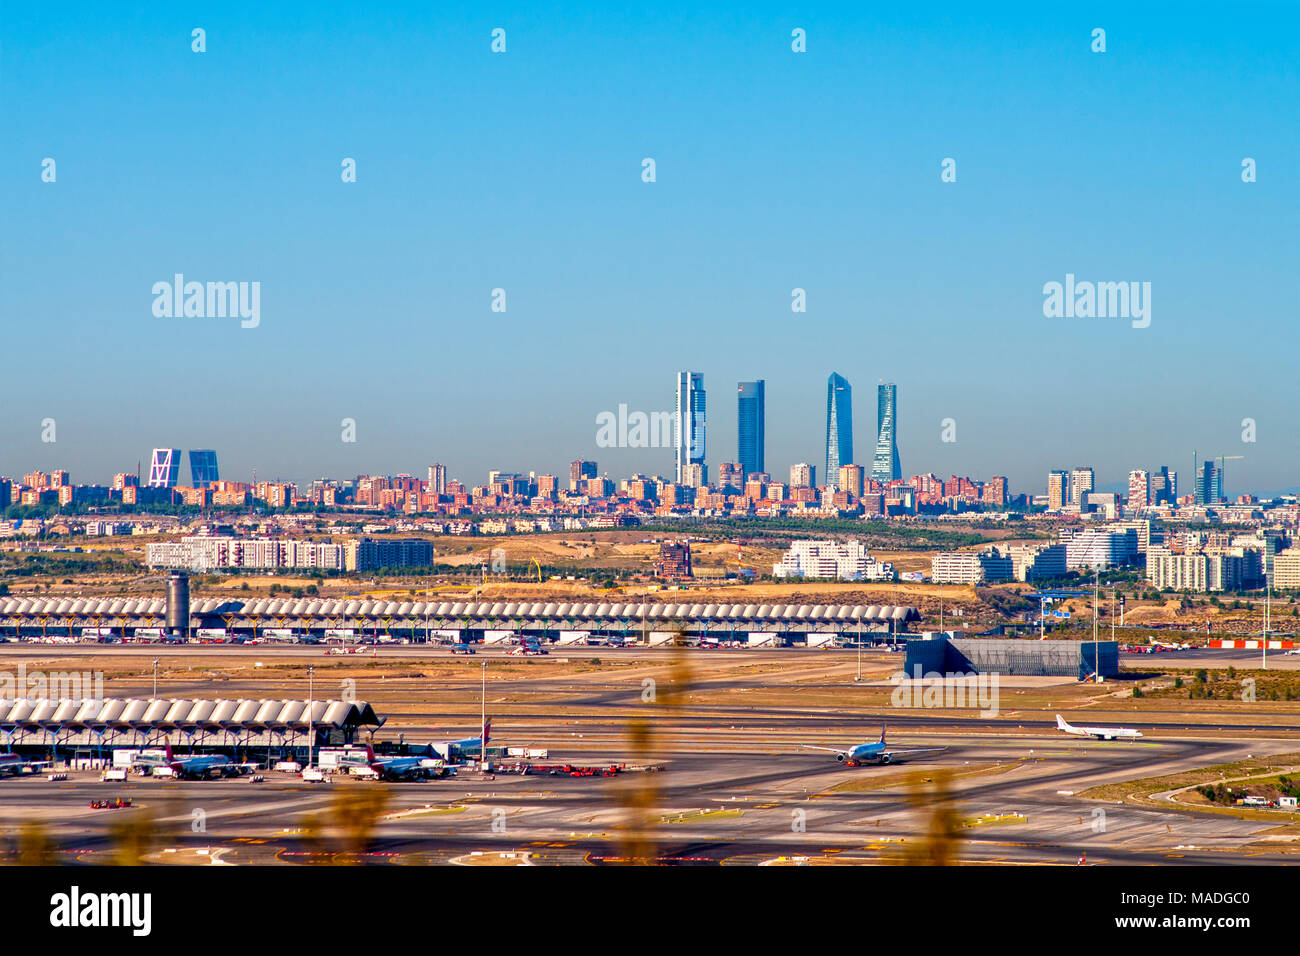 Aeropuerto de Barajas. Madrid. España Stock Photo